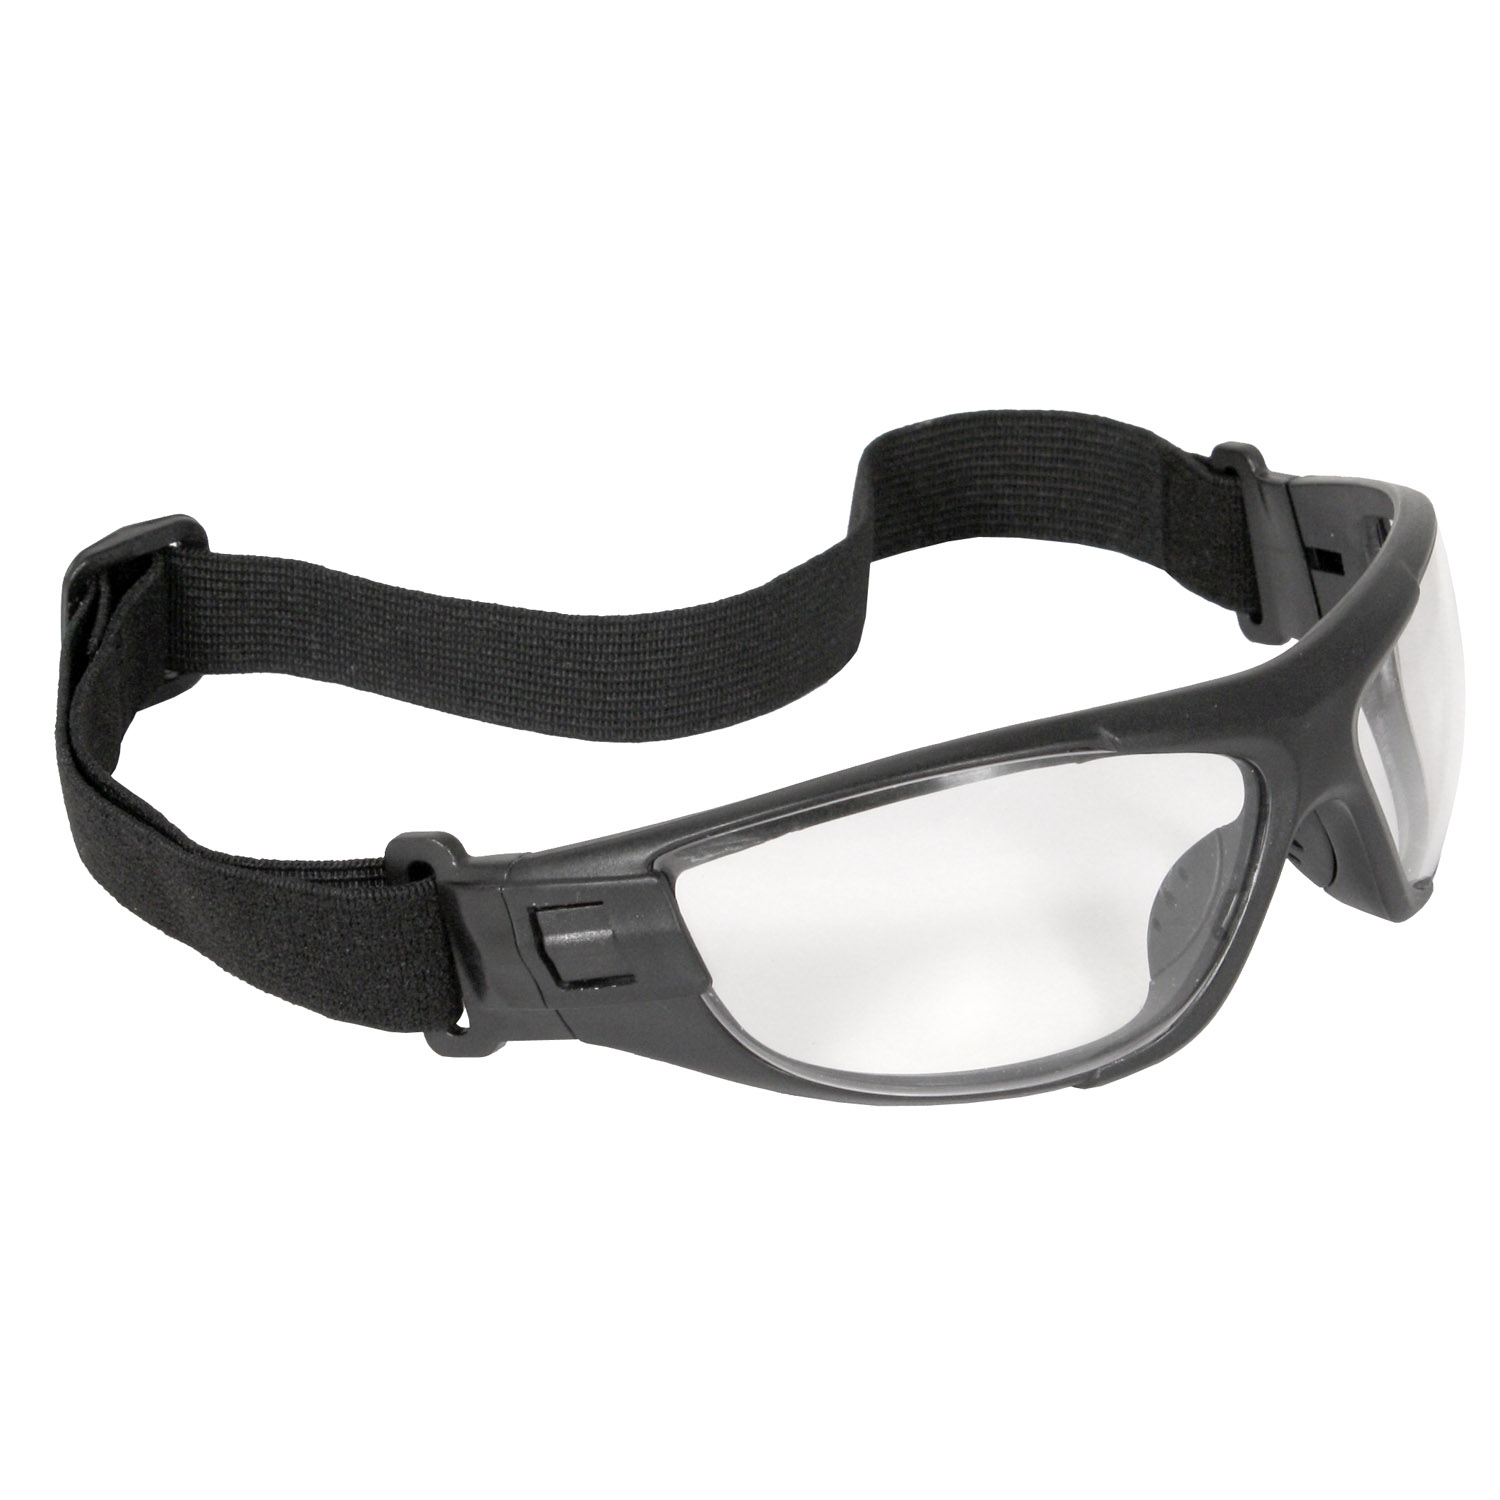 Cuatro™ 4-in-1 Foam Lined Eyewear - Black Frame - Clear Anti-Fog Lens - Anti-Fog Lens